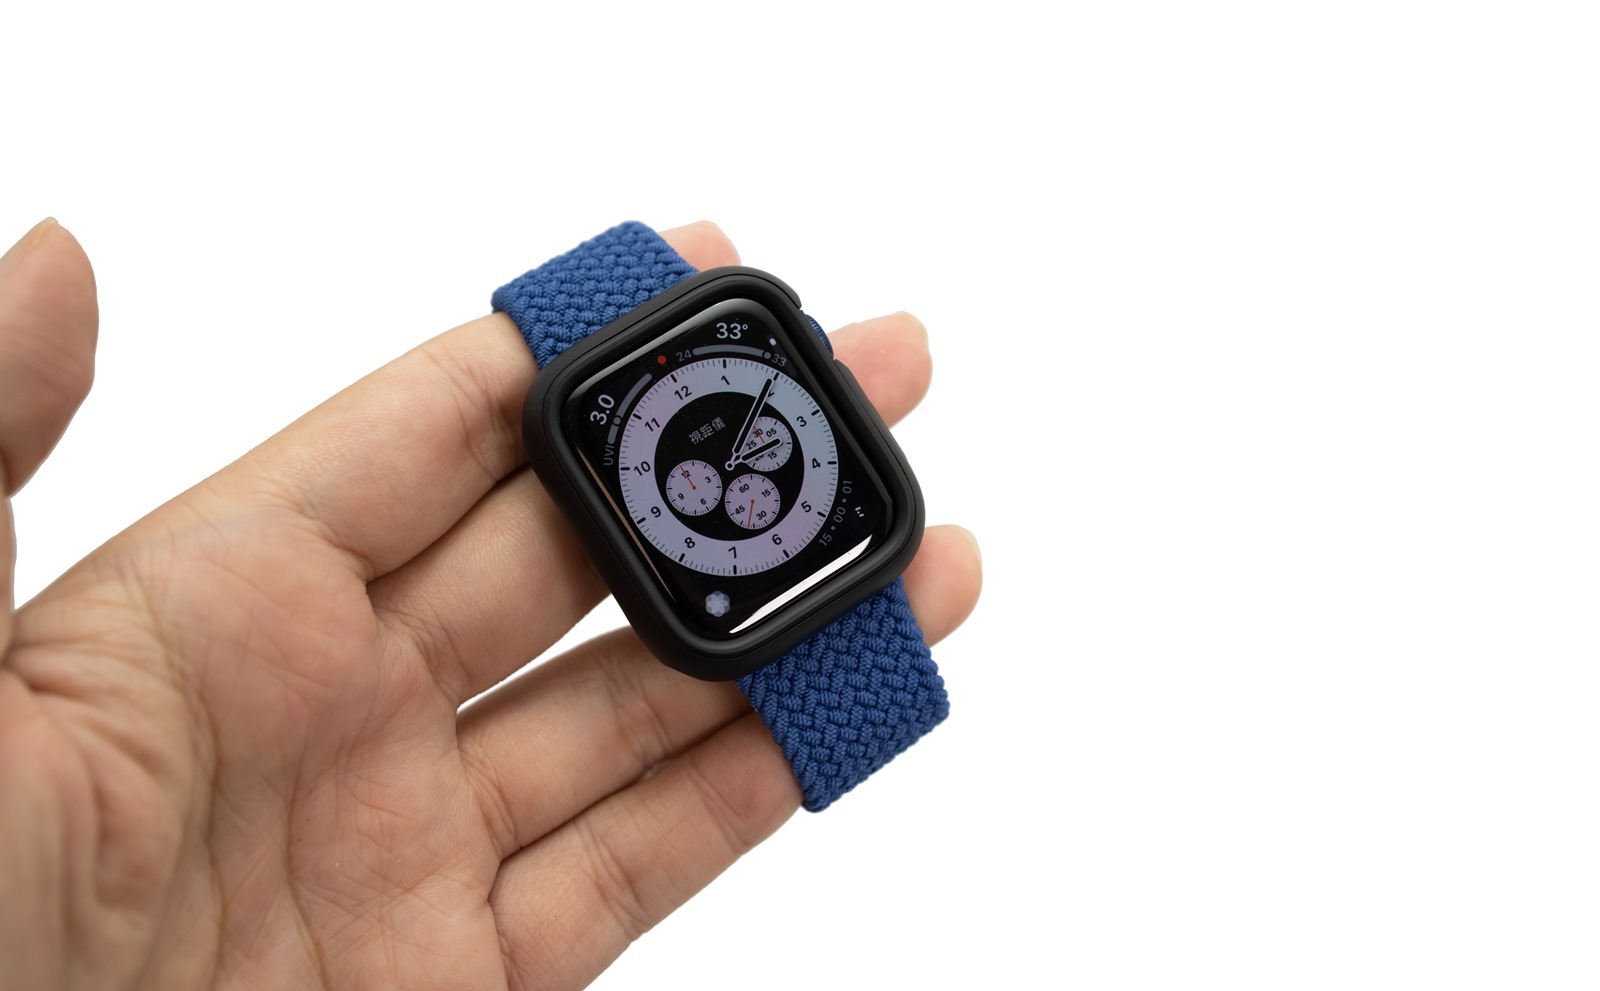 給 Apple Watch 強大保護也多點個性化！犀牛盾 Apple Watch 保護殼 CrashGuard NX 入手分享（S6 款式）@3C 達人廖阿輝